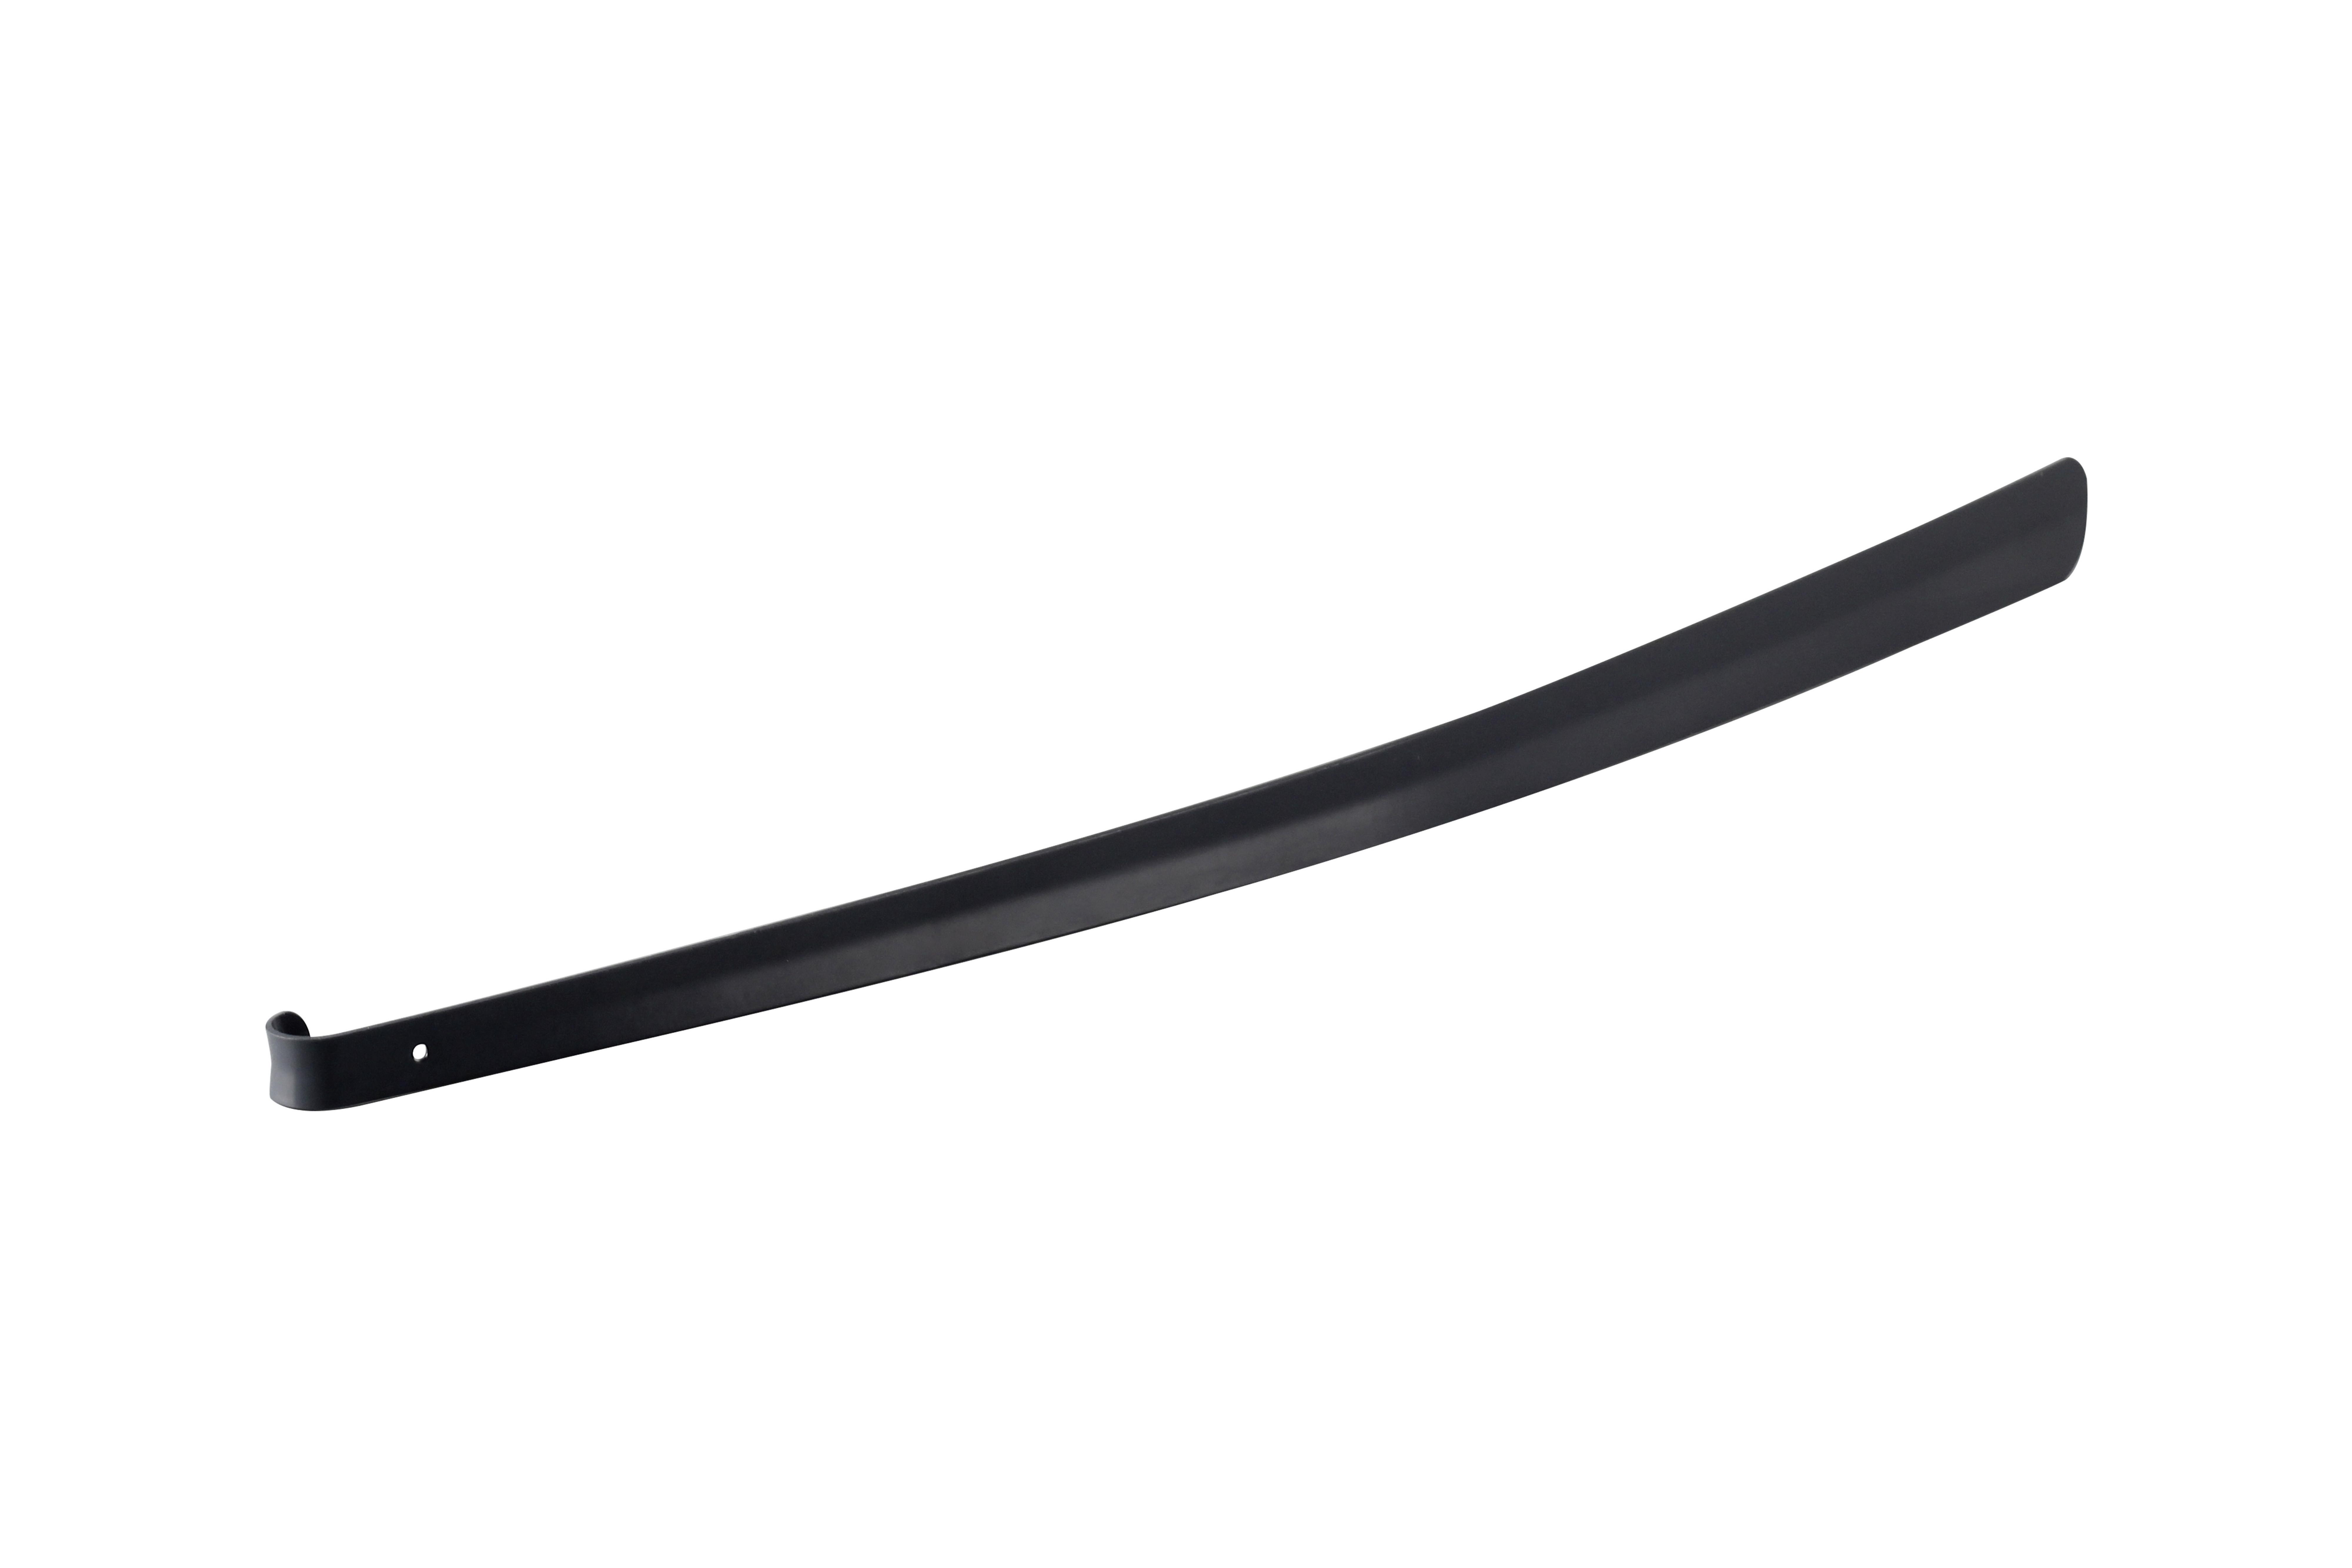 Obuvák Big Xxl - čierna, Konvenčný, kov (4,2/79cm) - Premium Living